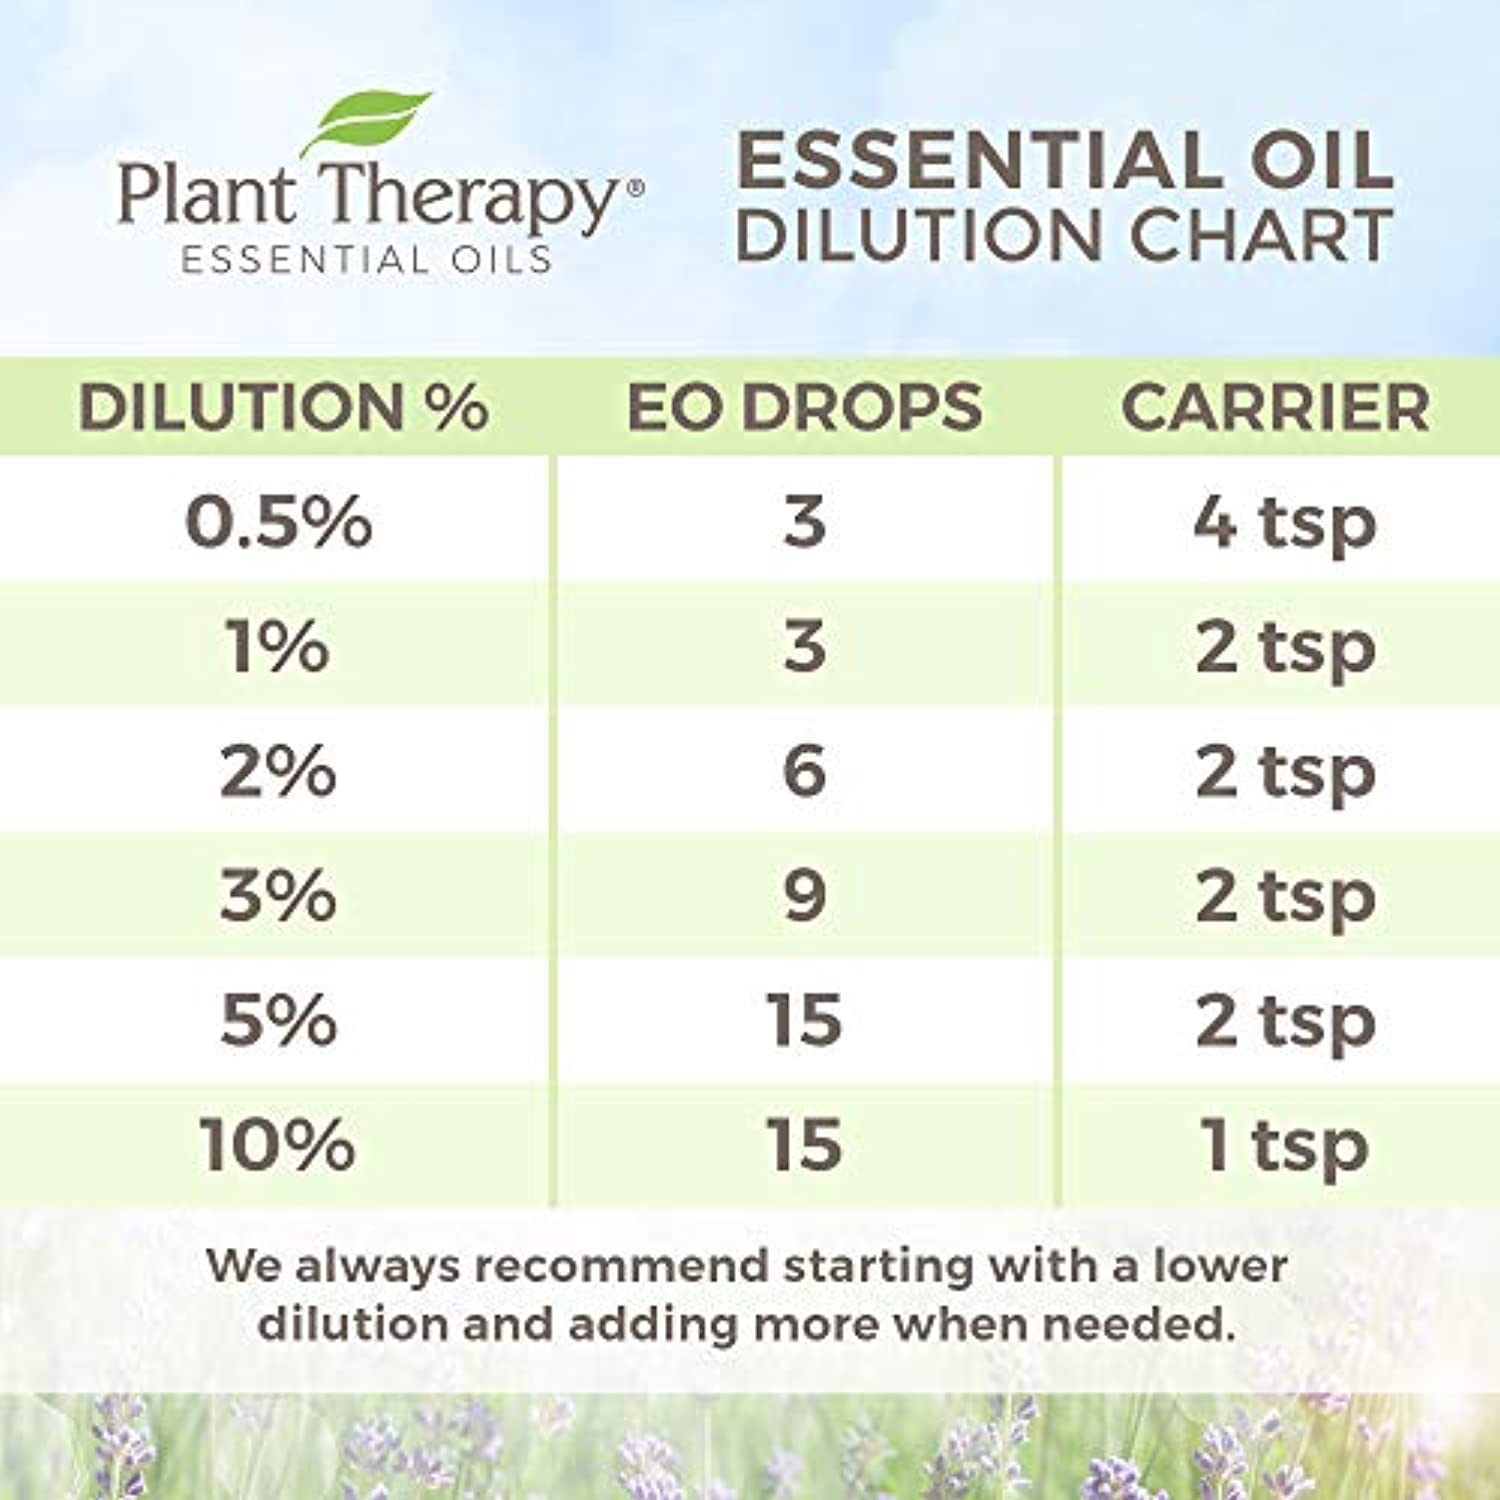 Conjunto de 6 aceites esenciales orgánicos certificados por USDA de Plant  Therapy Essential Oils, incluye eucalipto, lavanda, naranja, menta, limón y